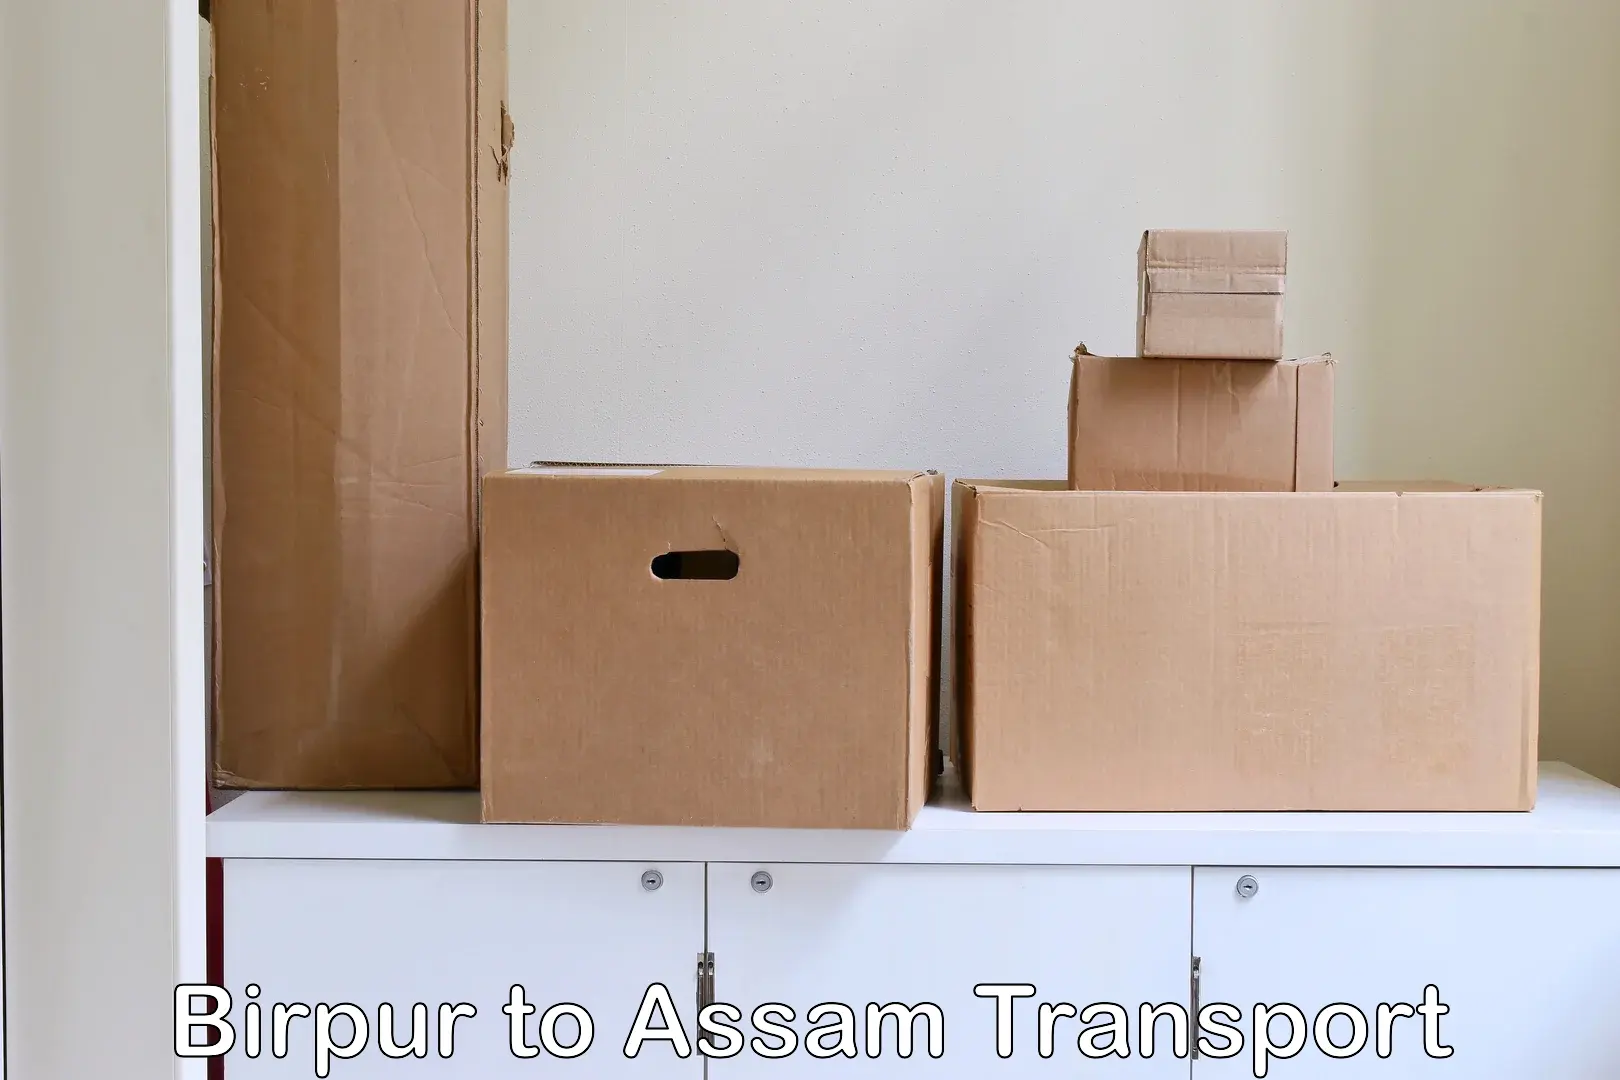 Online transport Birpur to Lala Assam